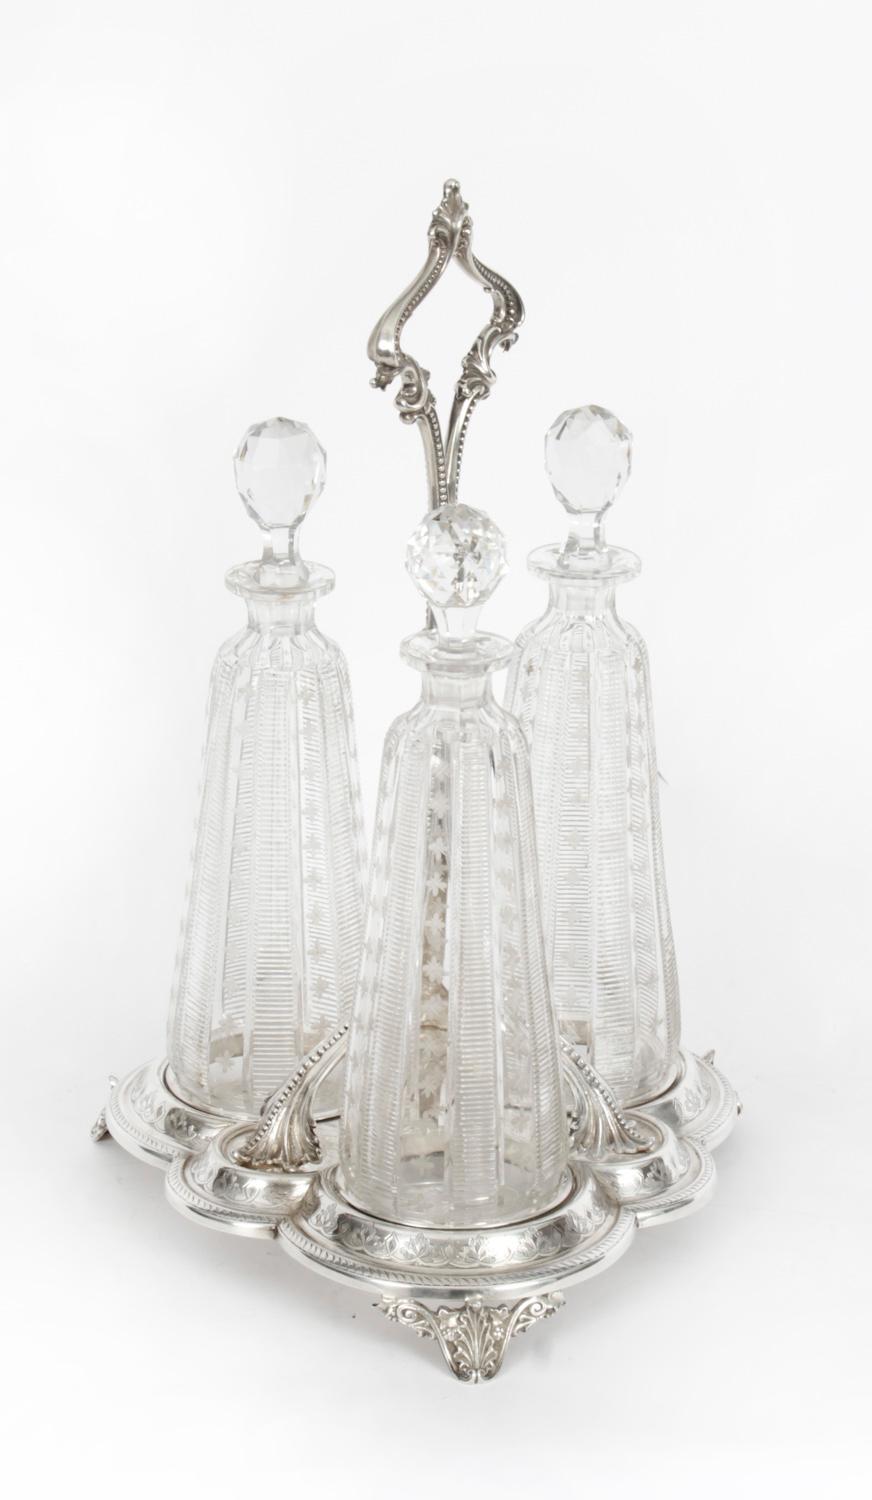 Il s'agit d'un très joli tantale victorien ancien en métal argenté avec trois carafes et bouchons en verre taillé, datant d'environ 1860.
 
Les trois carafes en verre taillé sont de forme inhabituelle et présentent une superbe décoration linéaire